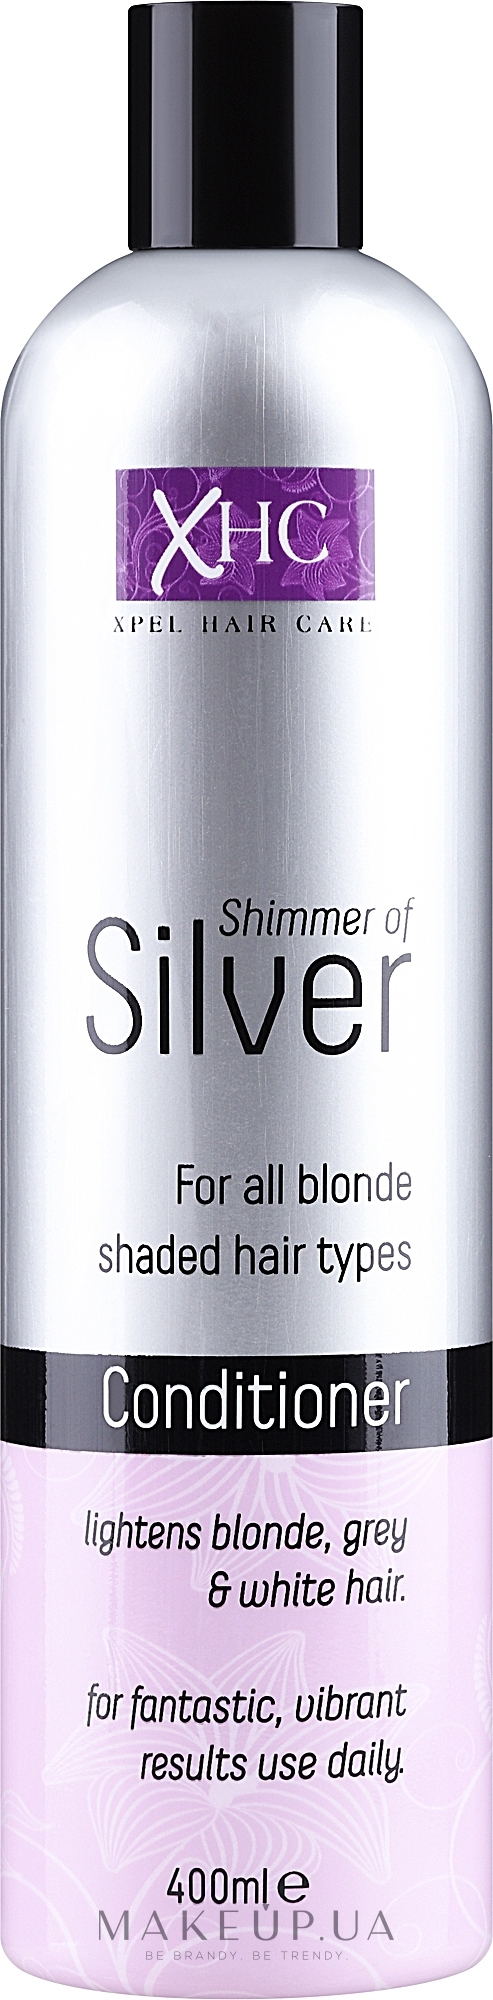 Кондиціонер для світлого волосся - Xpel Marketing Ltd Shimmer of Silver Conditioner — фото 400ml